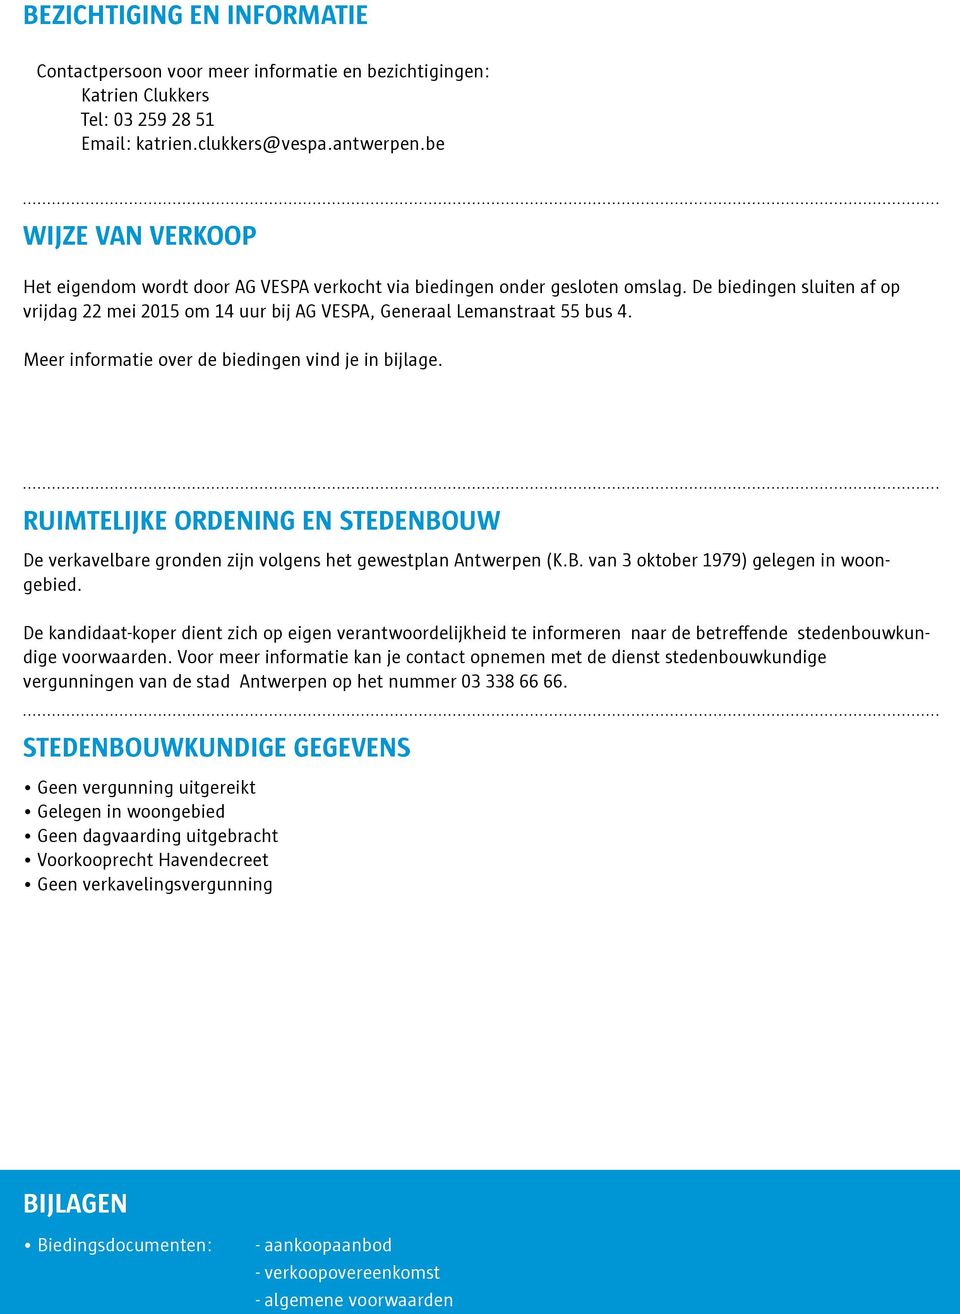 De biedingen sluiten af op vrijdag 22 mei 2015 om 14 uur bij AG VESPA, Generaal Lemanstraat 55 bus 4. Meer informatie over de biedingen vind je in bijlage.